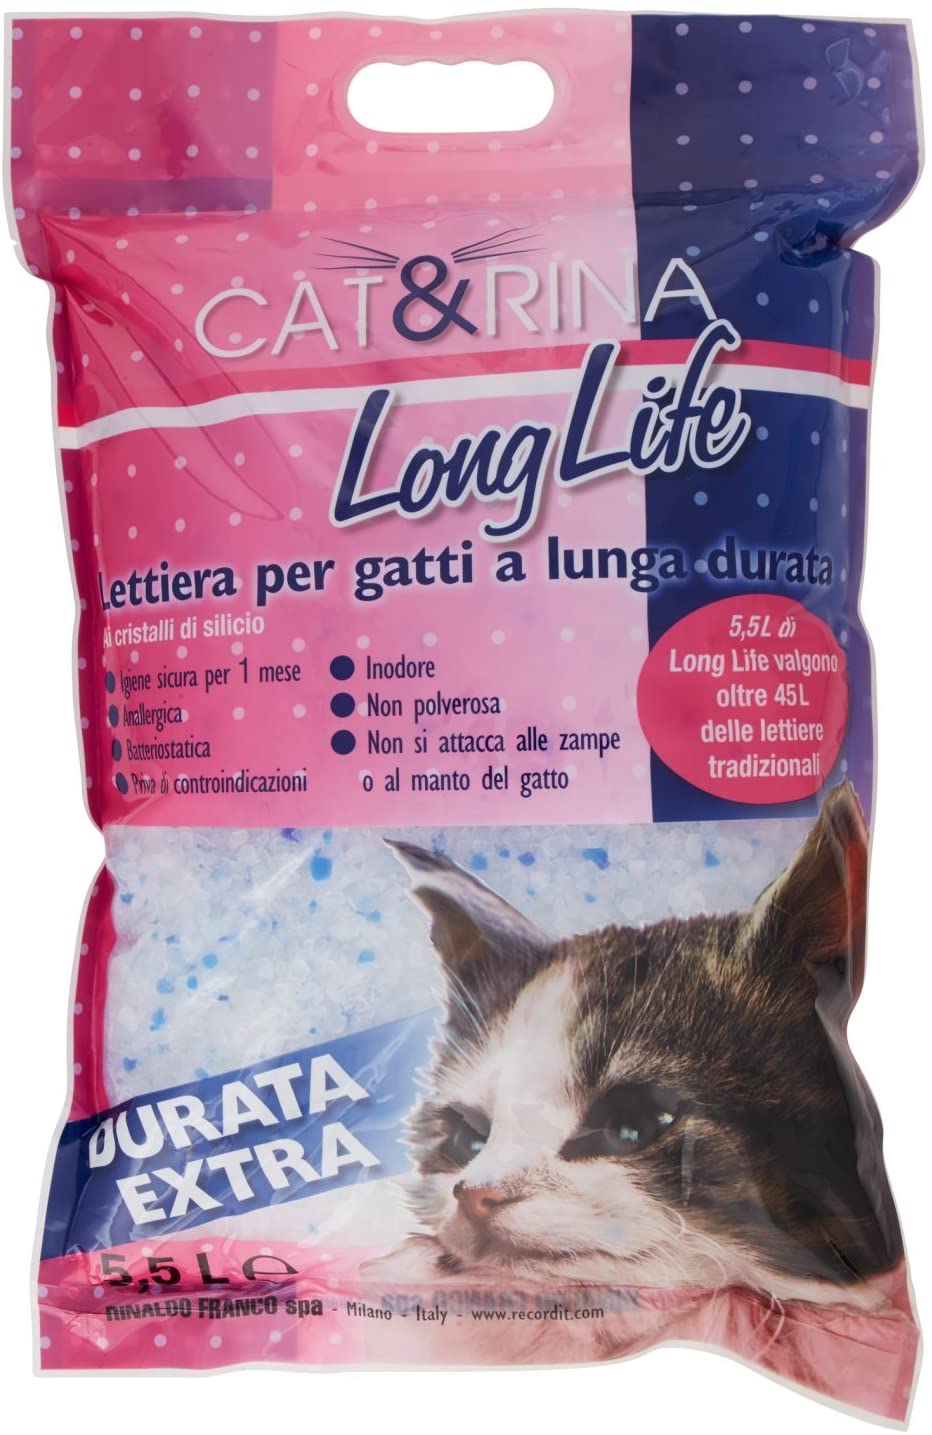 Cat&Rina Long Life Lettiera per Gatti a Lunga Durata ai Cristalli di Silicio - 5.5 L